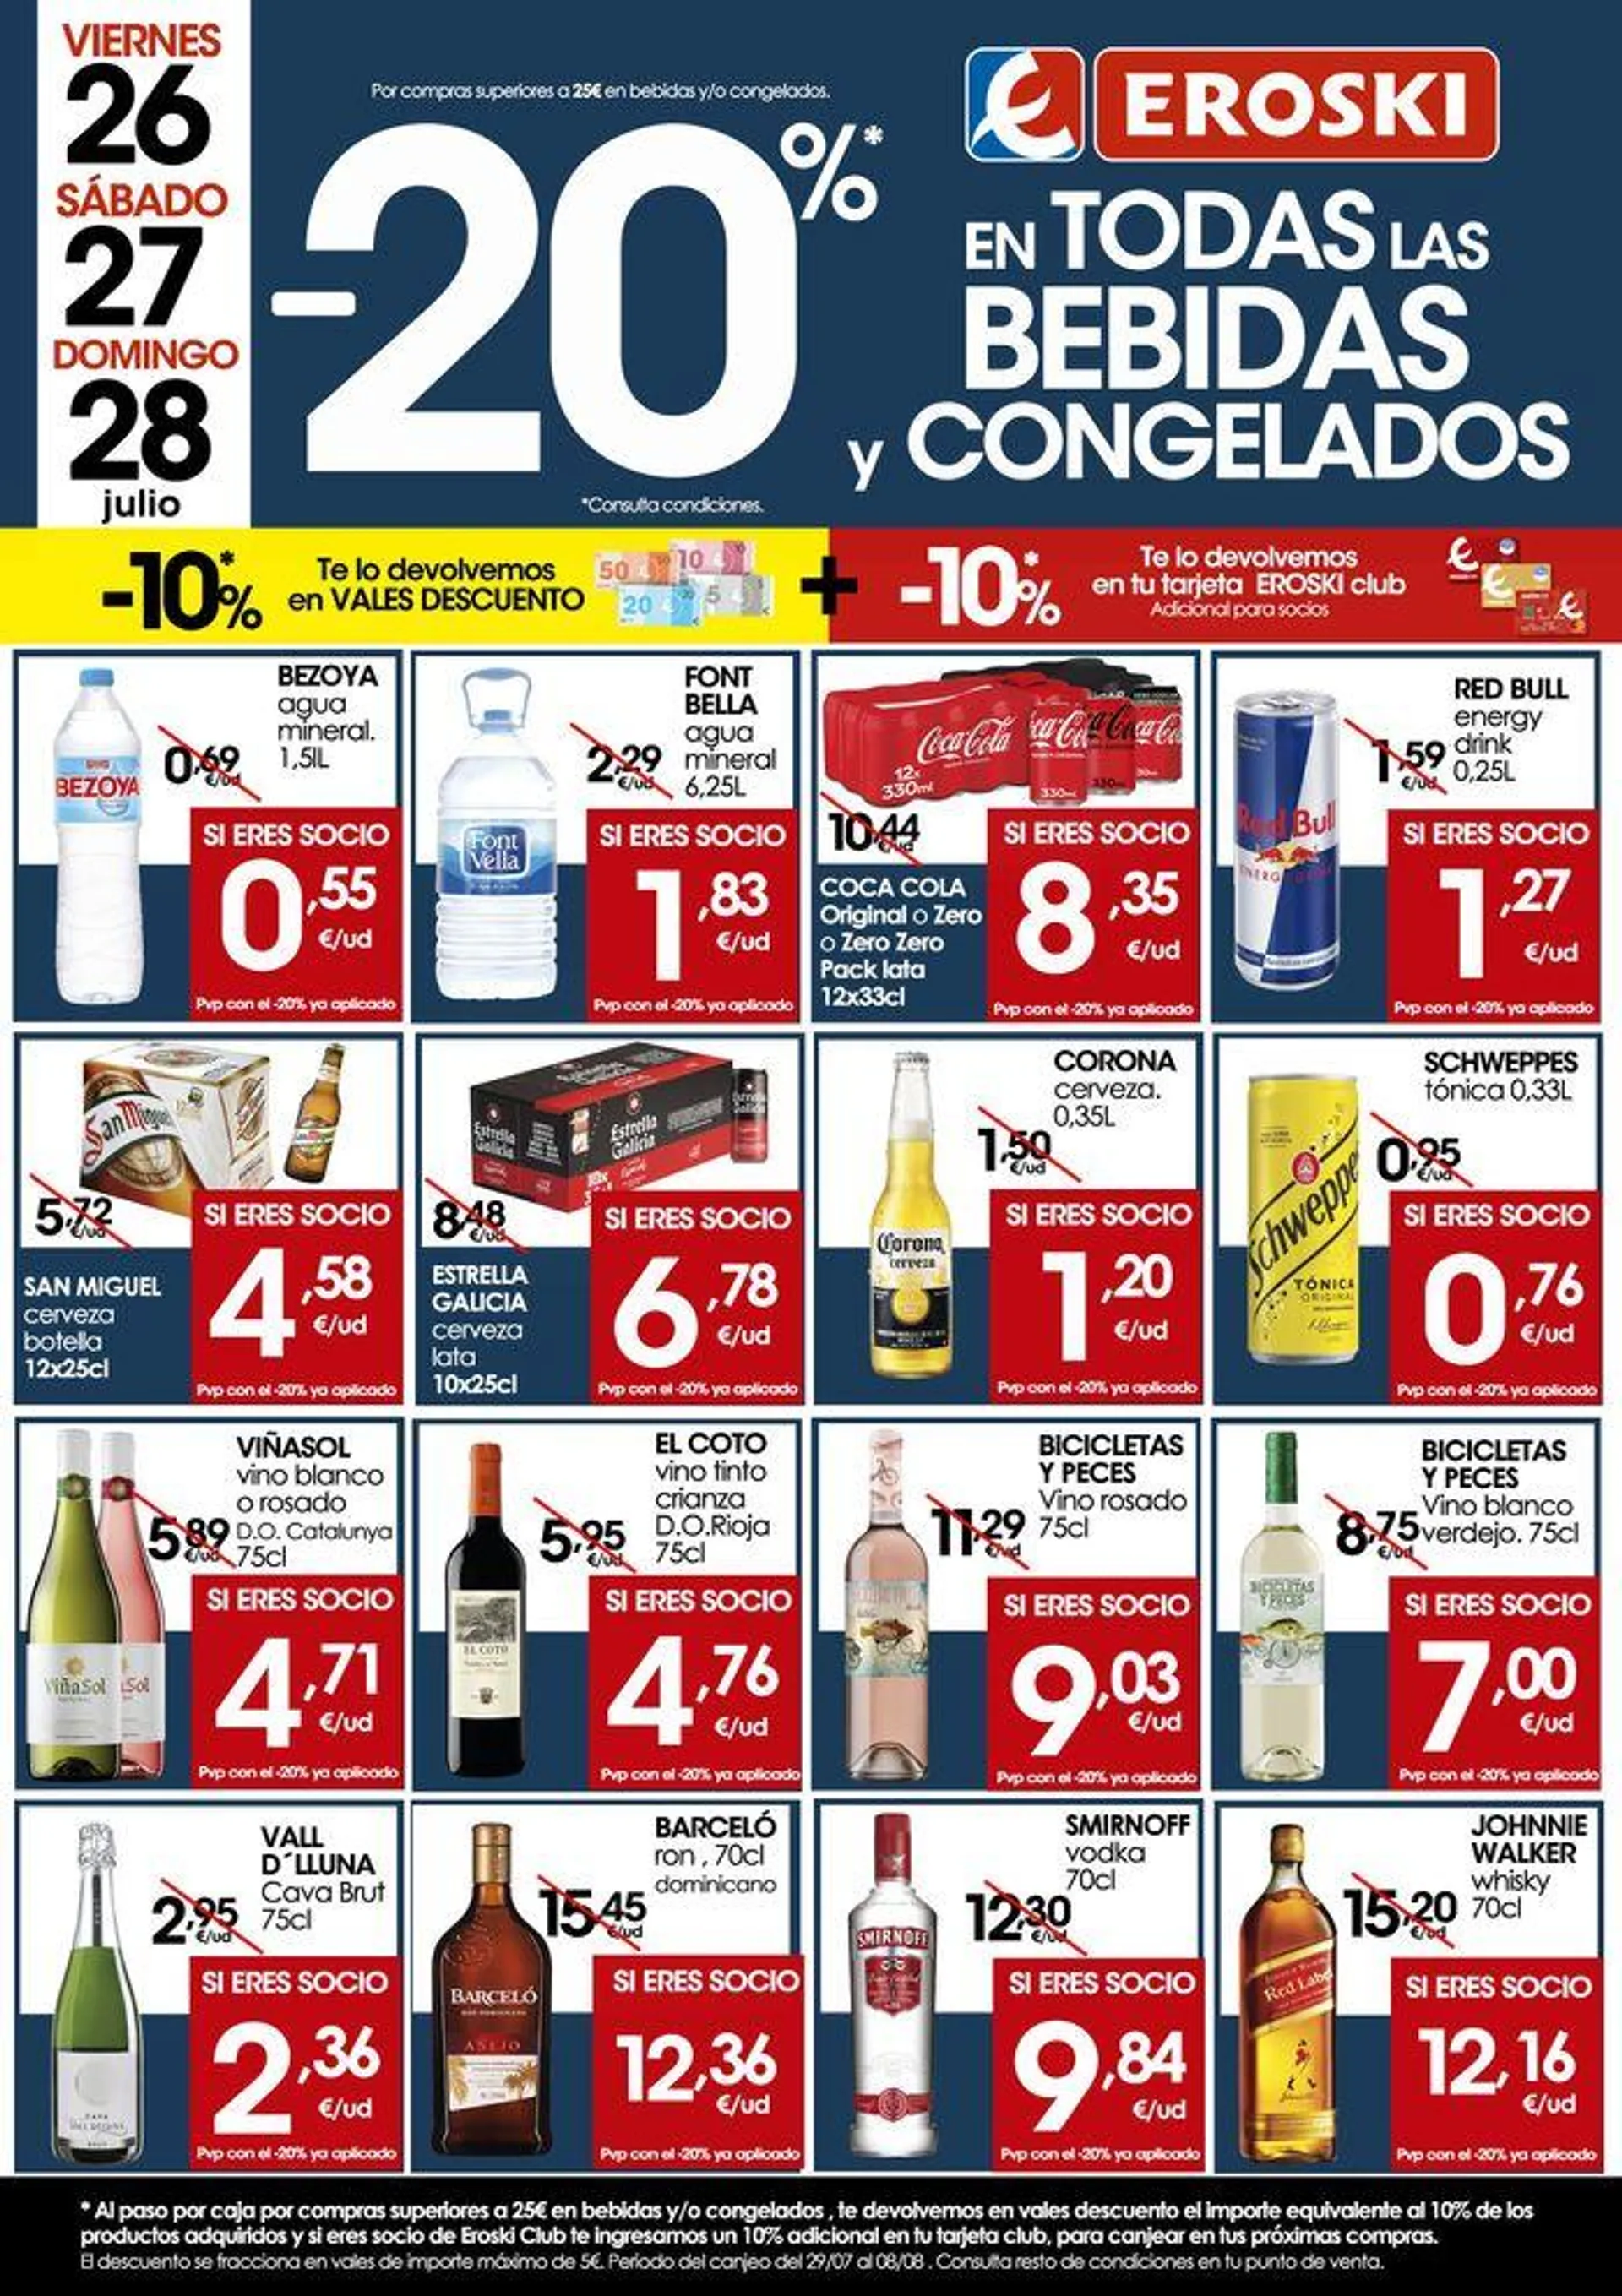 -20% en TODAS las BEBIDAS y CONGELADOS - 1